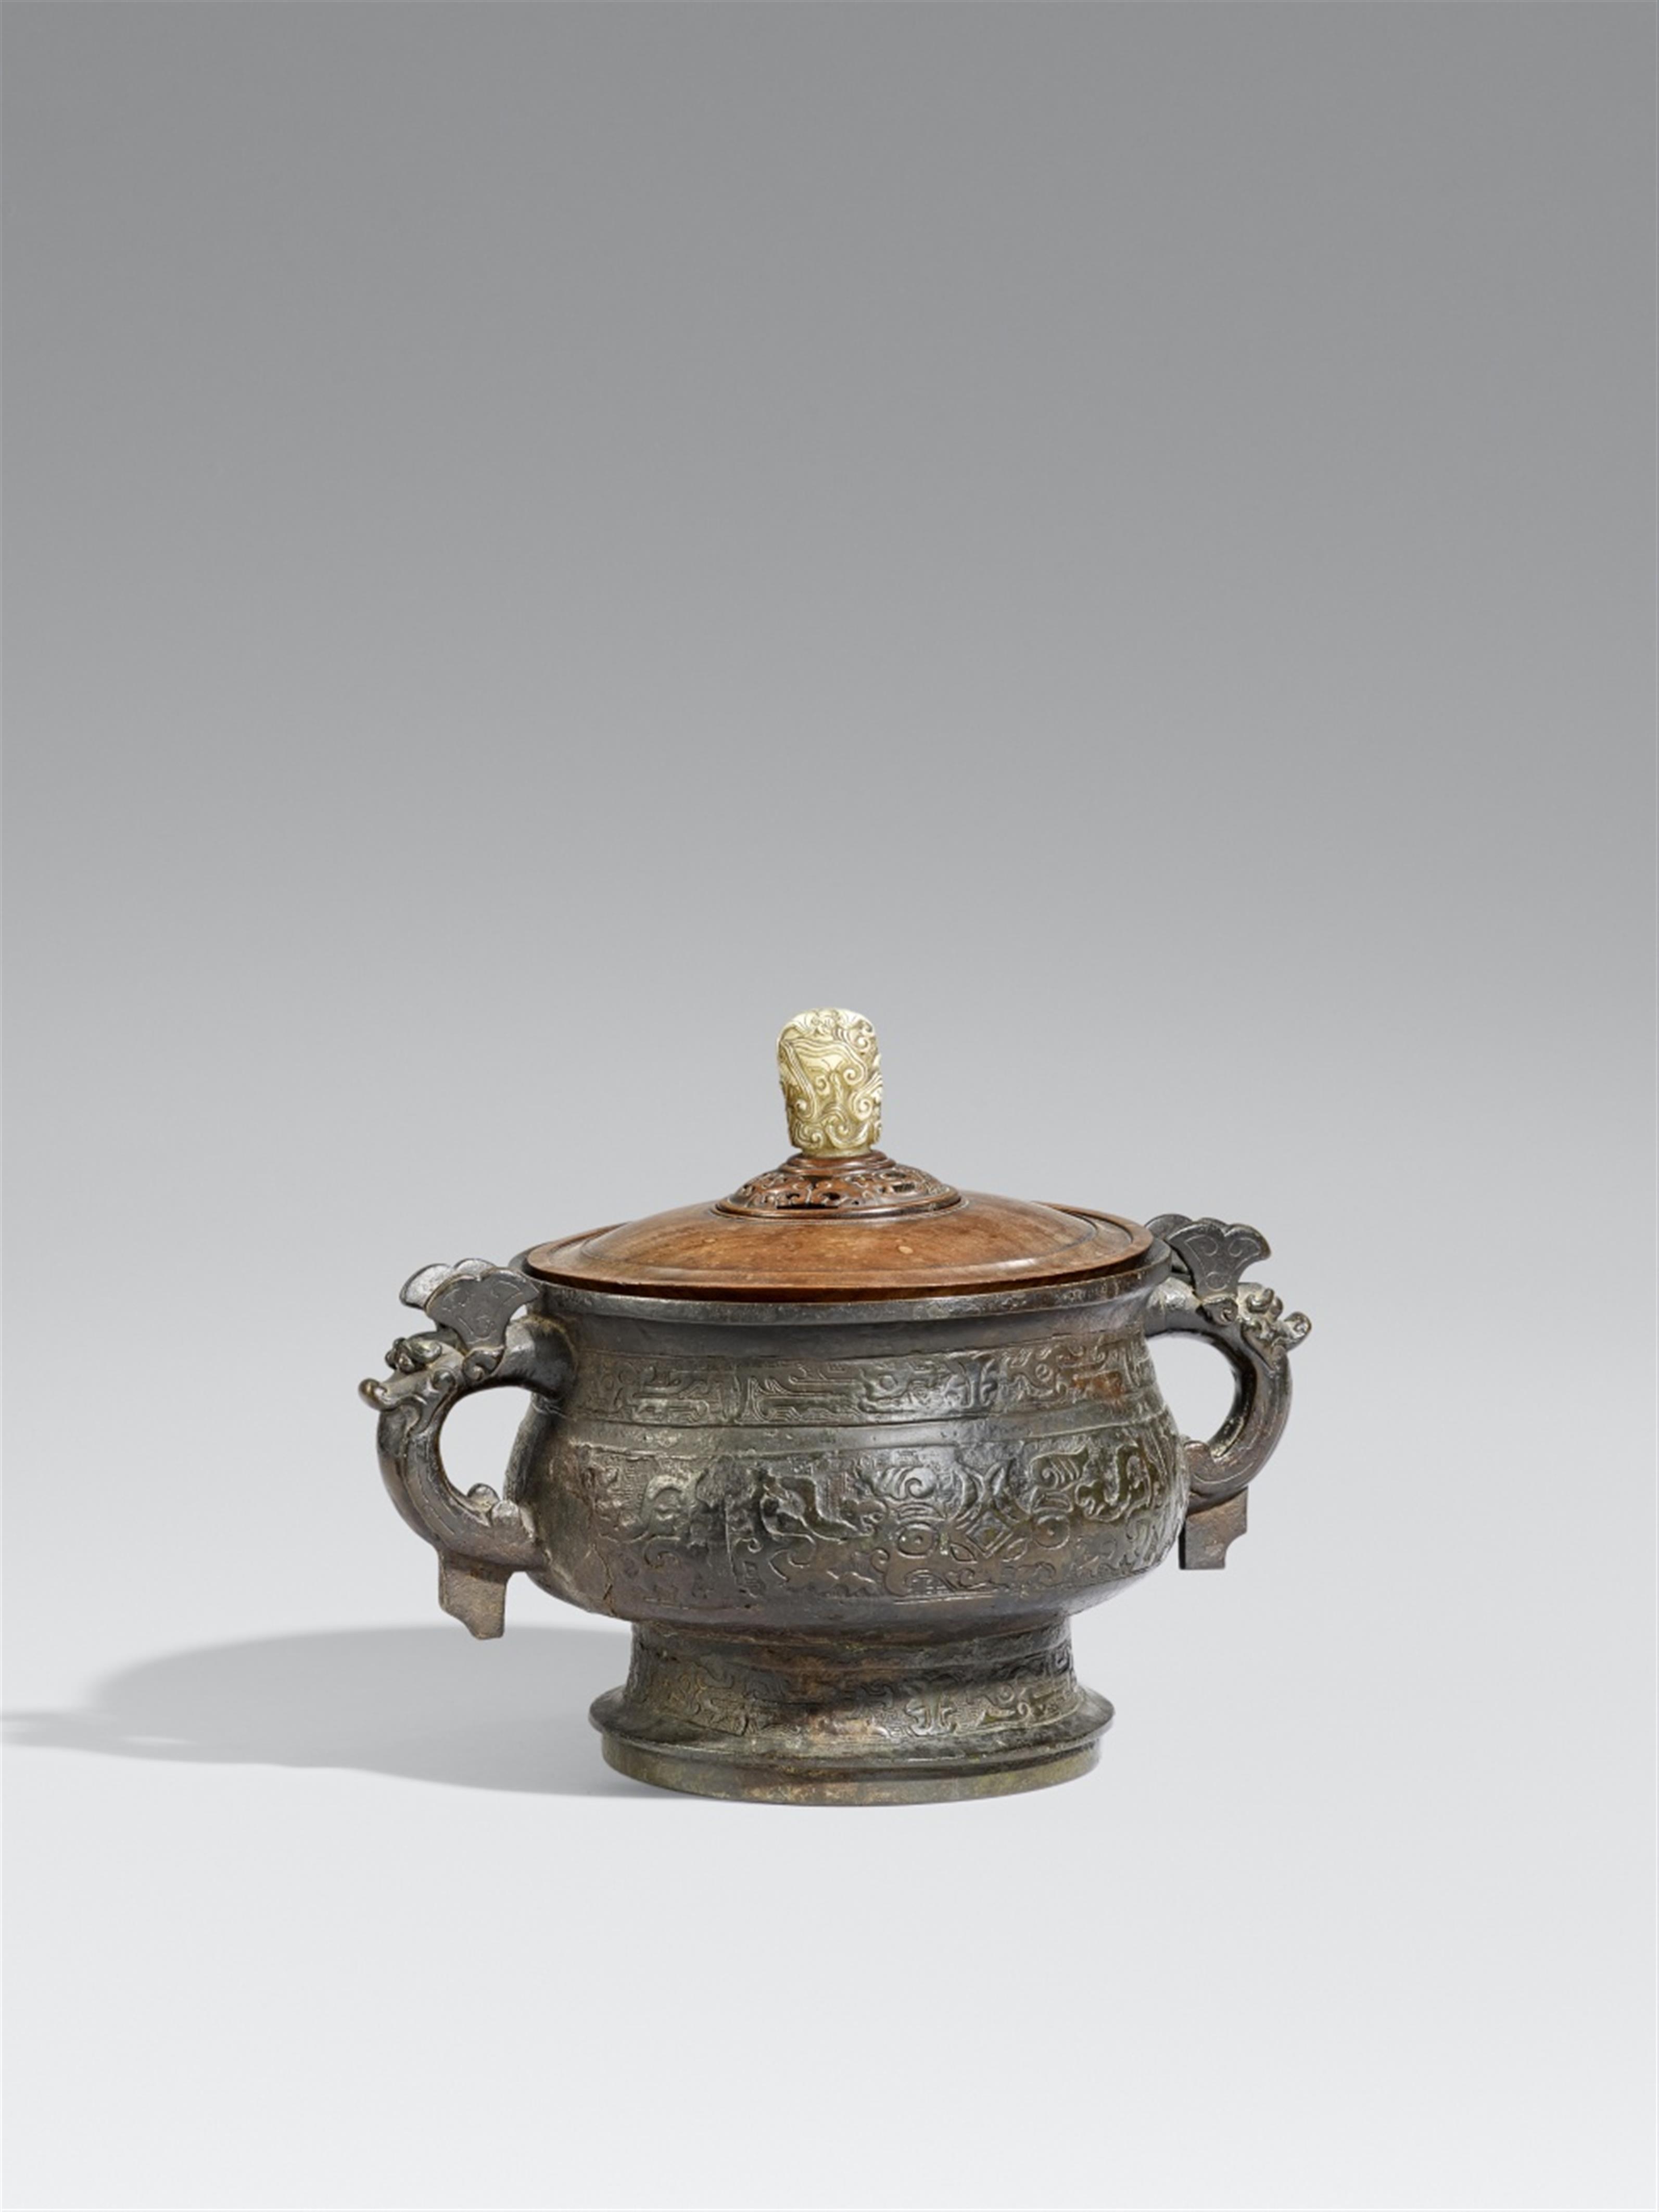 Sehr großes Gefäß vom Typ gui. Bronze. Ming/Qing-Zeit, 16./17. Jh. - image-1